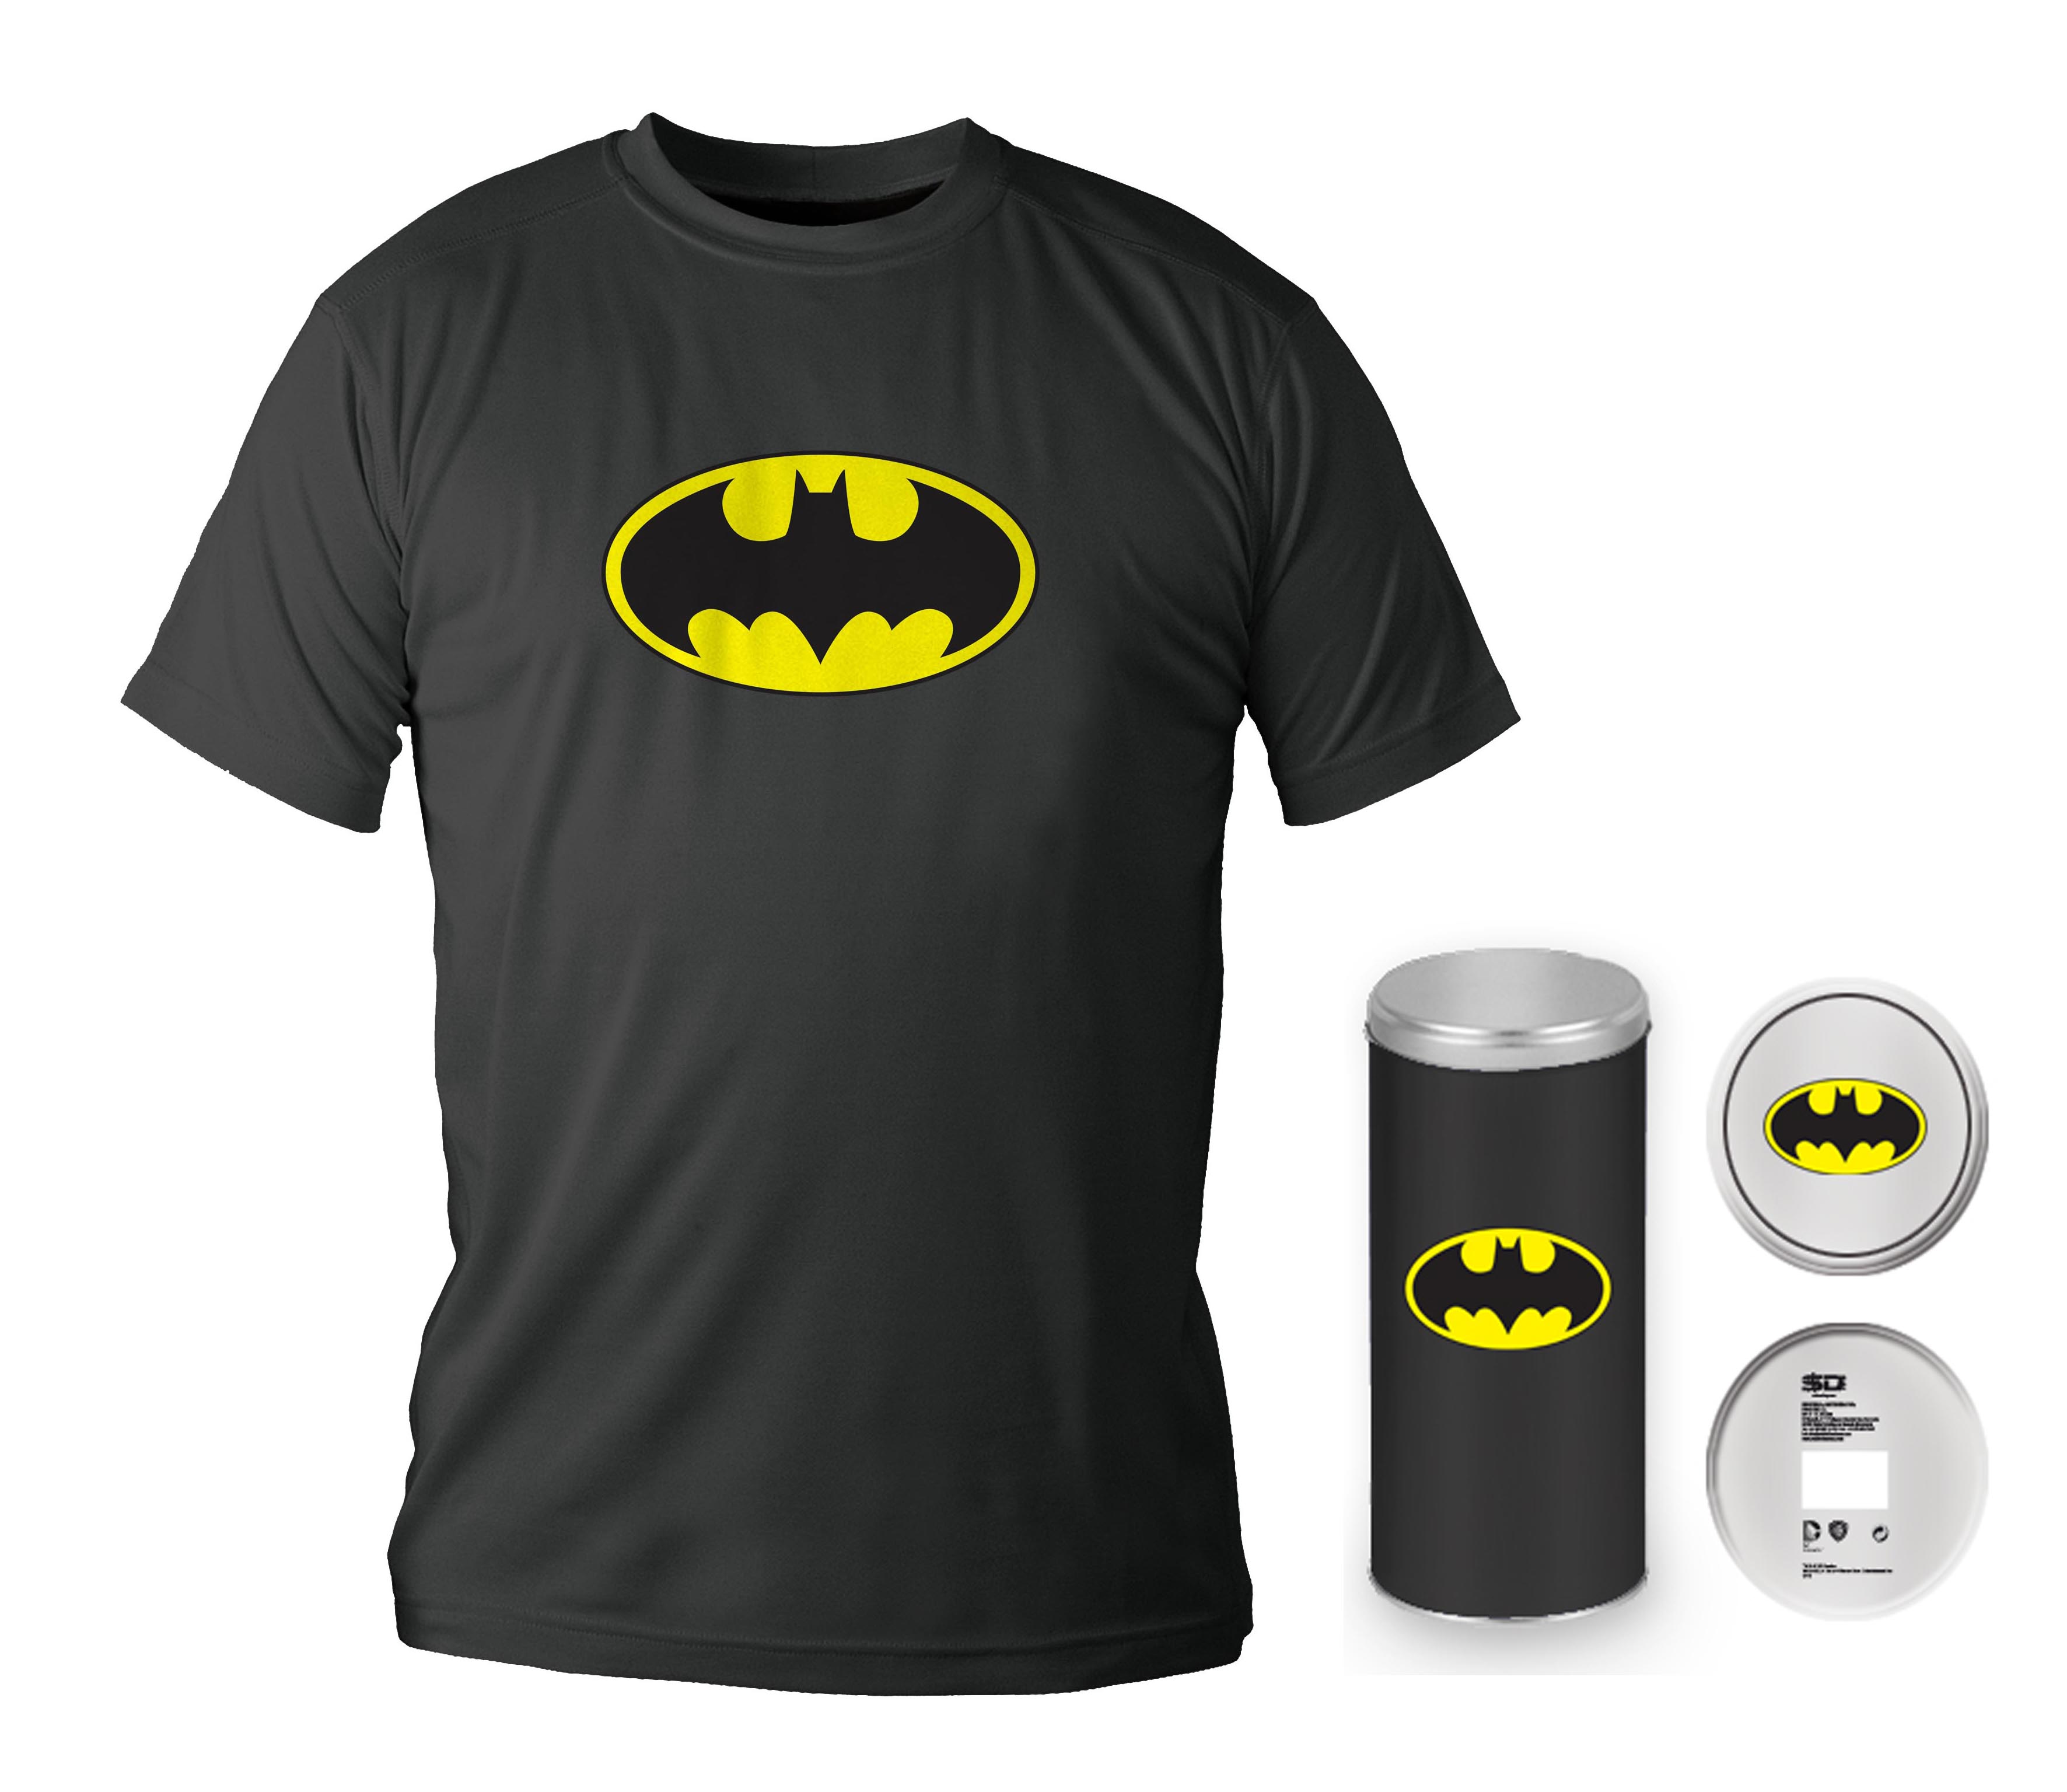 DC Universe T-shirt Tube Deluxe Logo Batman boite metal